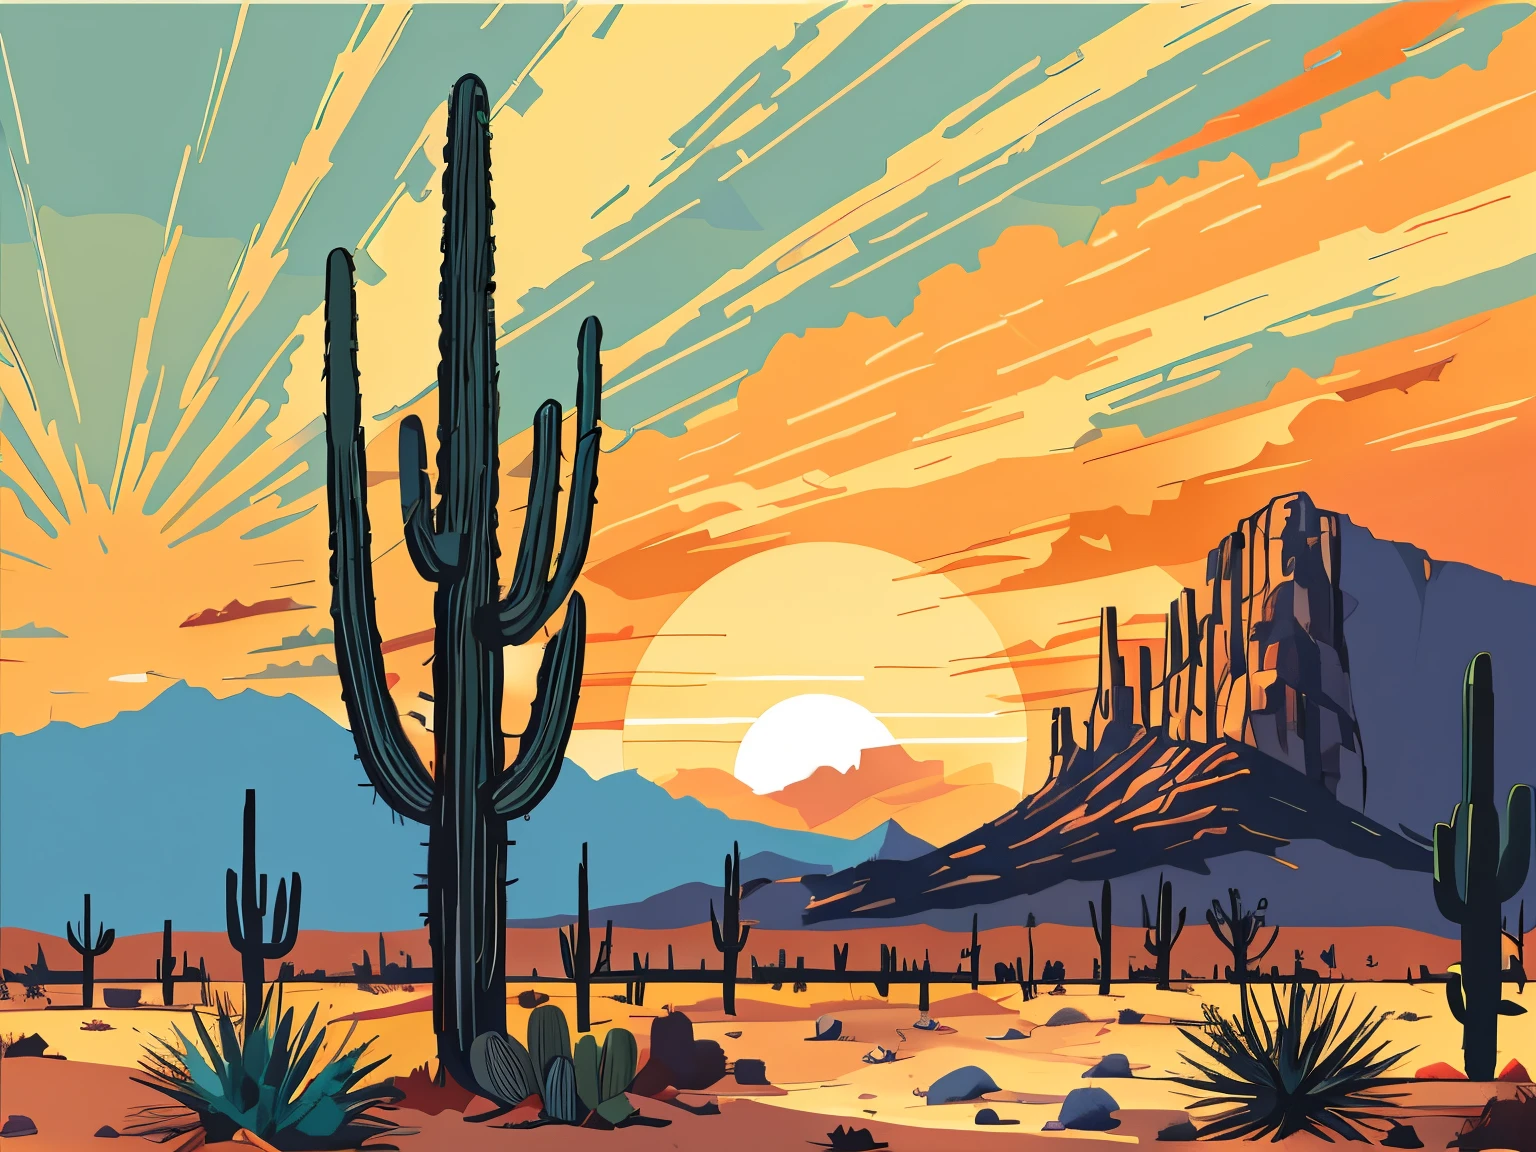 日落时沙漠上的仙人掌, 穩定擴散提示, 高品質, 4k分辨率, 實際的, 删除文本, 詳細的, 鮮豔的色彩, 專業照明, 數位繪畫, 流暢的線條, 向量